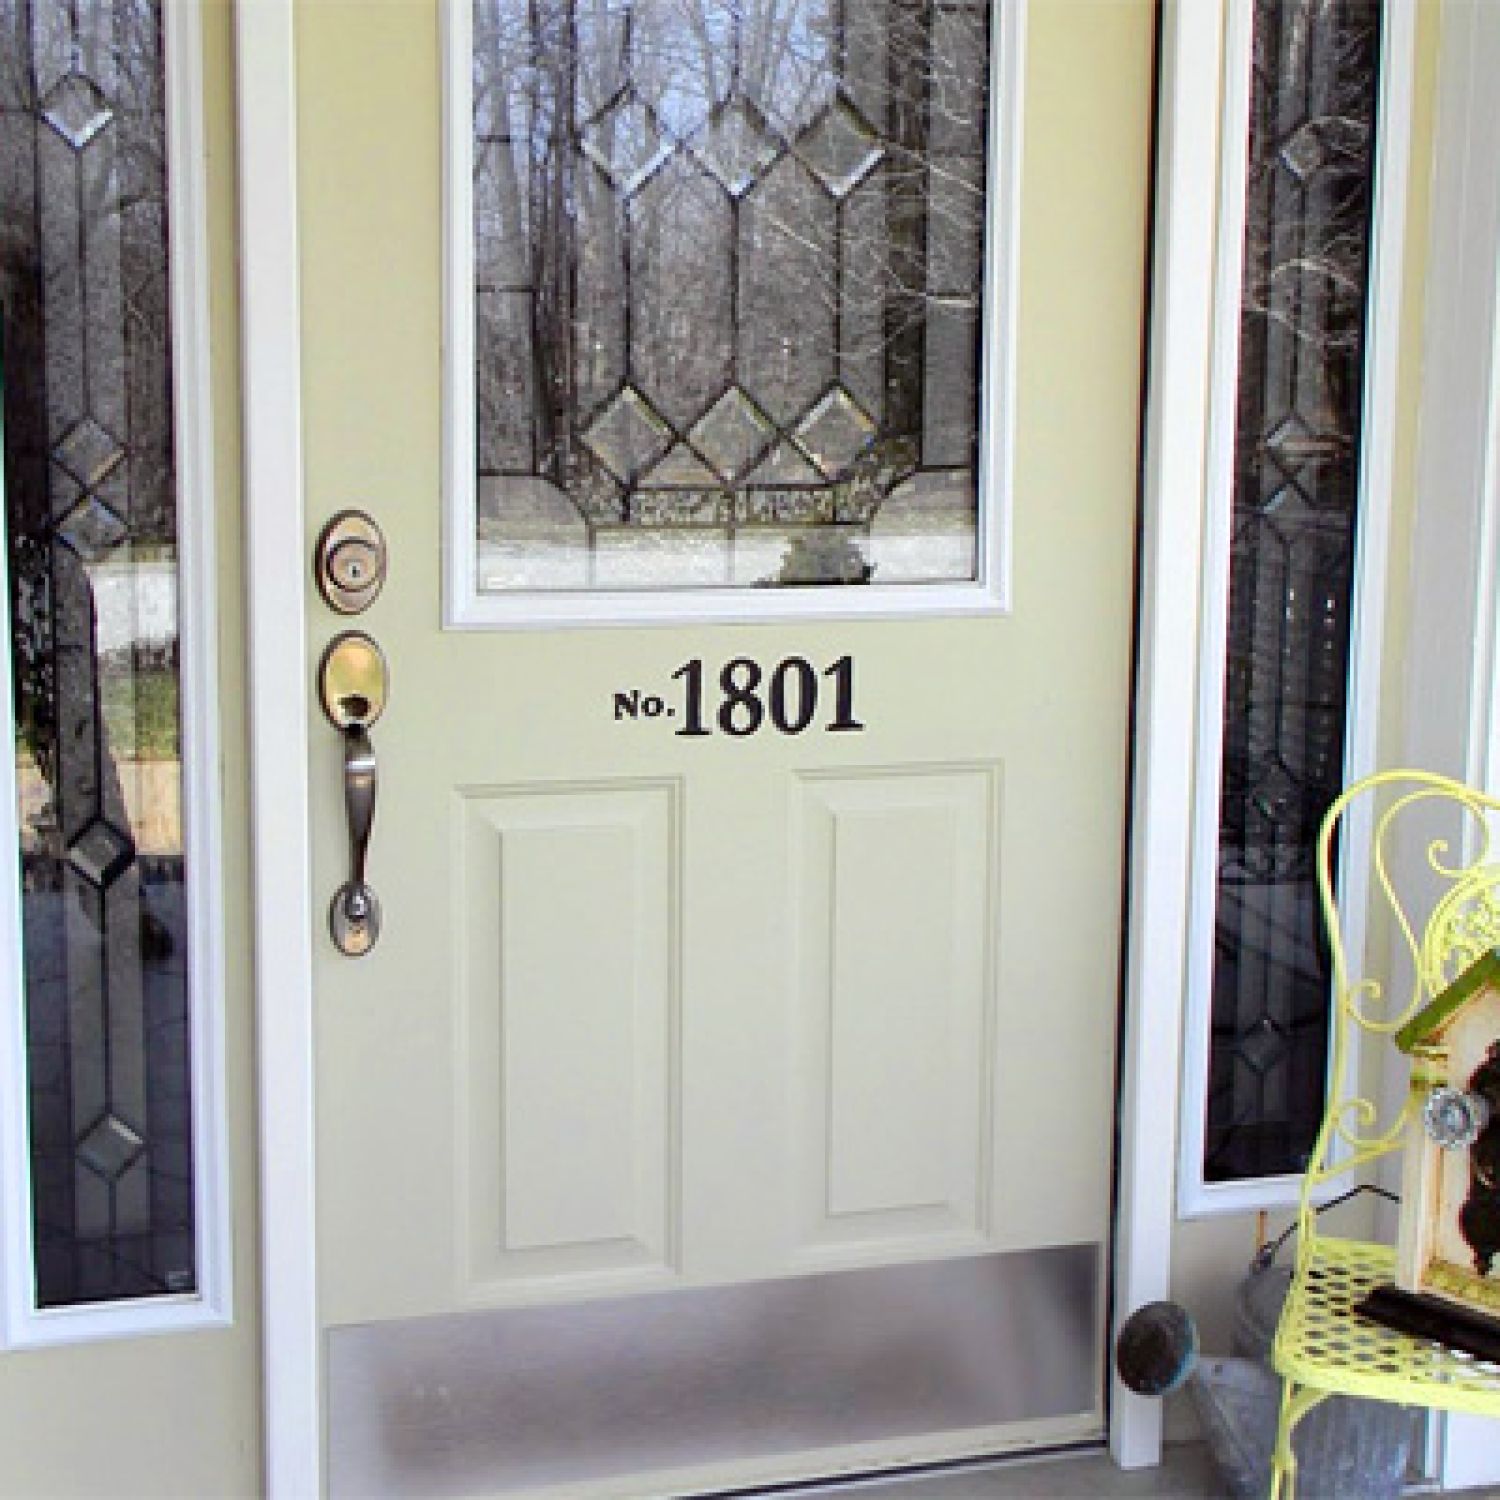 New Steel Entry Door | Value of Home Improvements